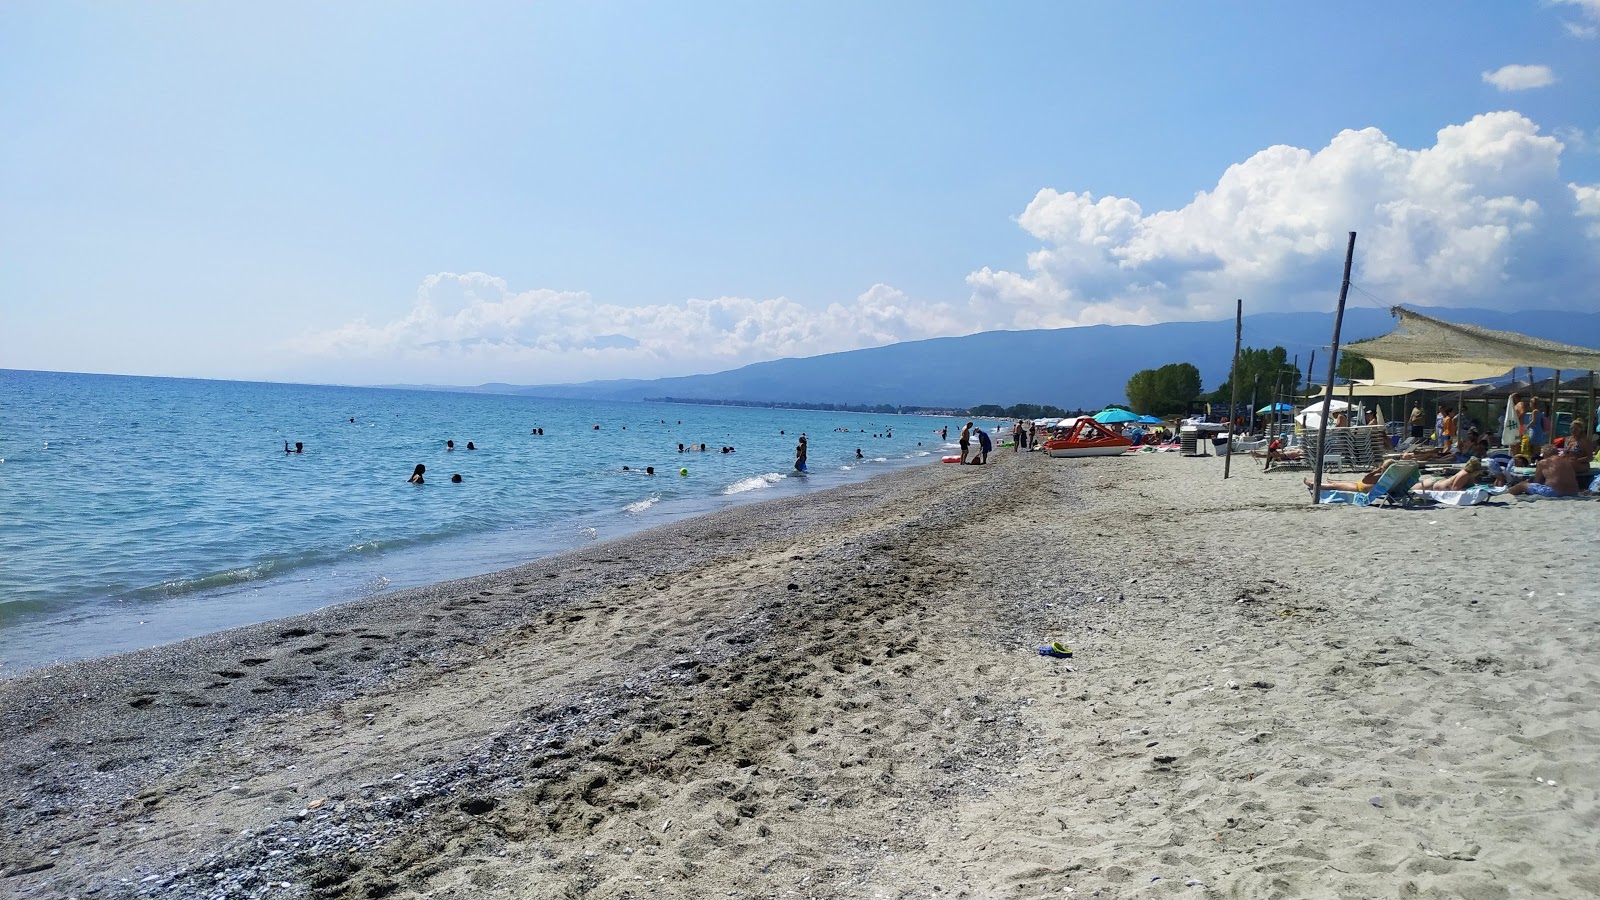 Zdjęcie Mylos beach - popularne miejsce wśród znawców relaksu